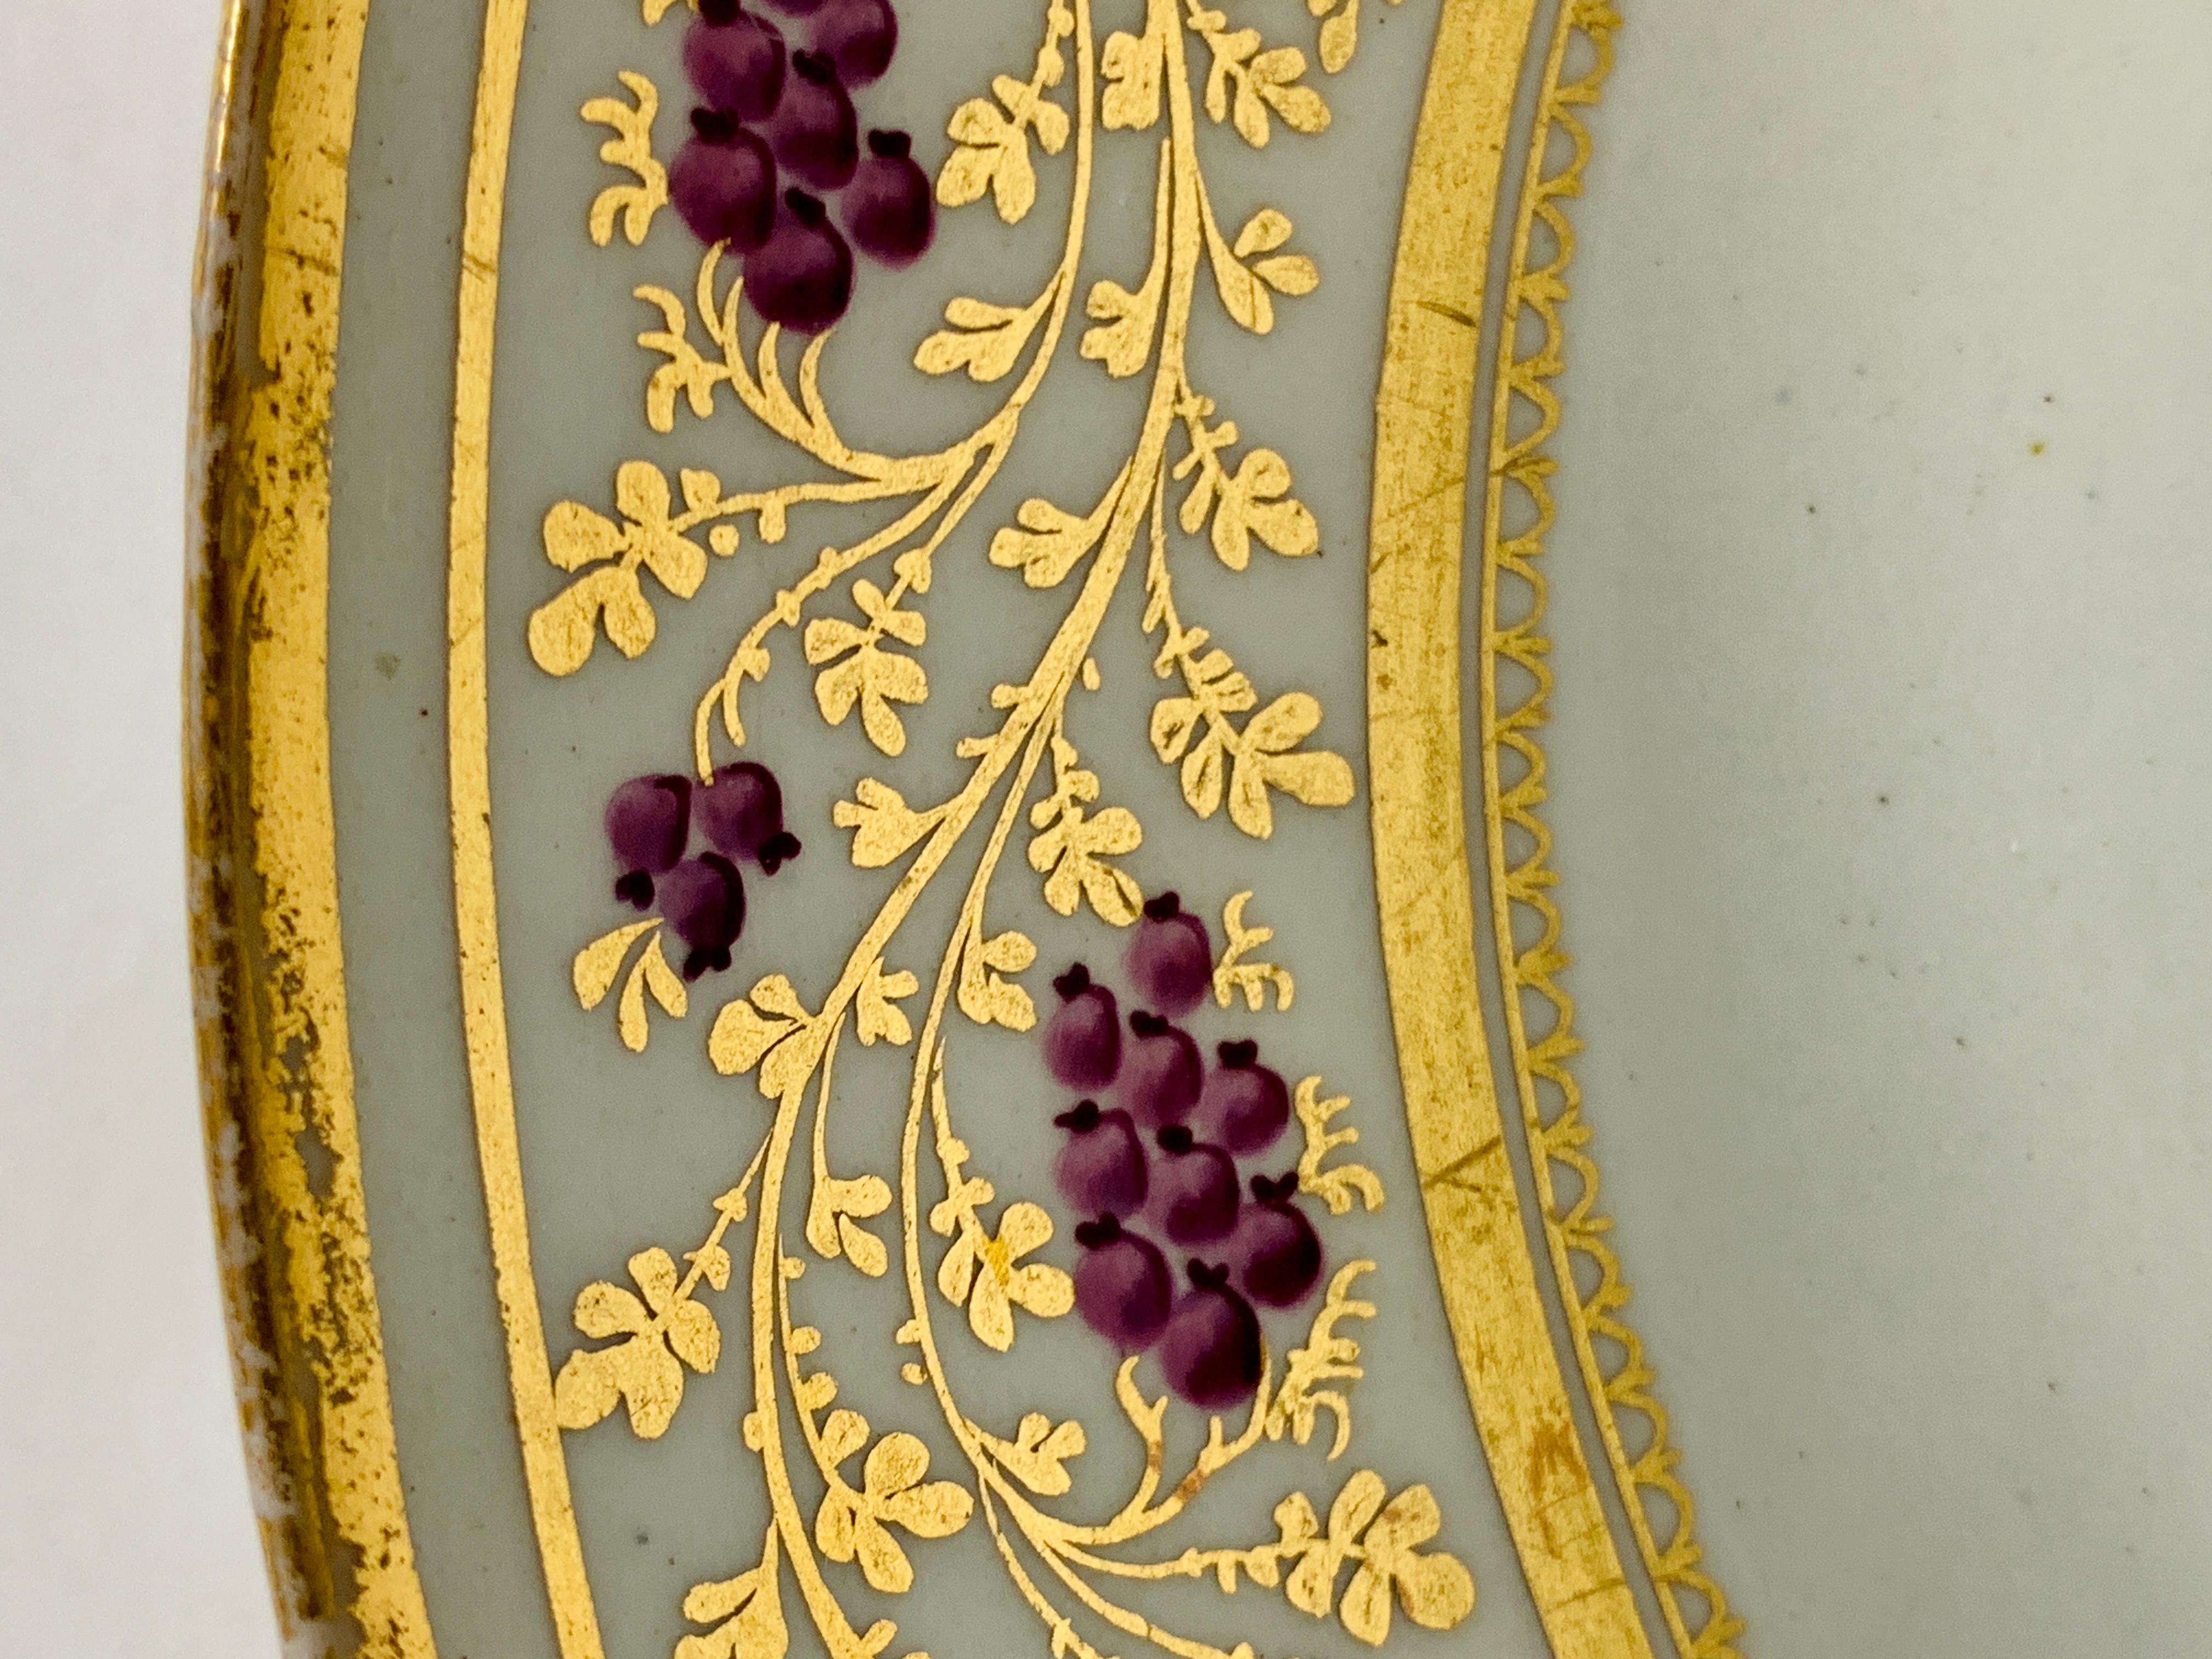 Provenance : La collection privée de Mario Buatta
Fabriqué par New Hall en Angleterre vers 1810, c'est un plat exquis avec des baies violettes sur une vigne dorée.
La dorure est somptueuse, et les baies violettes sont petites mais belles.
Le